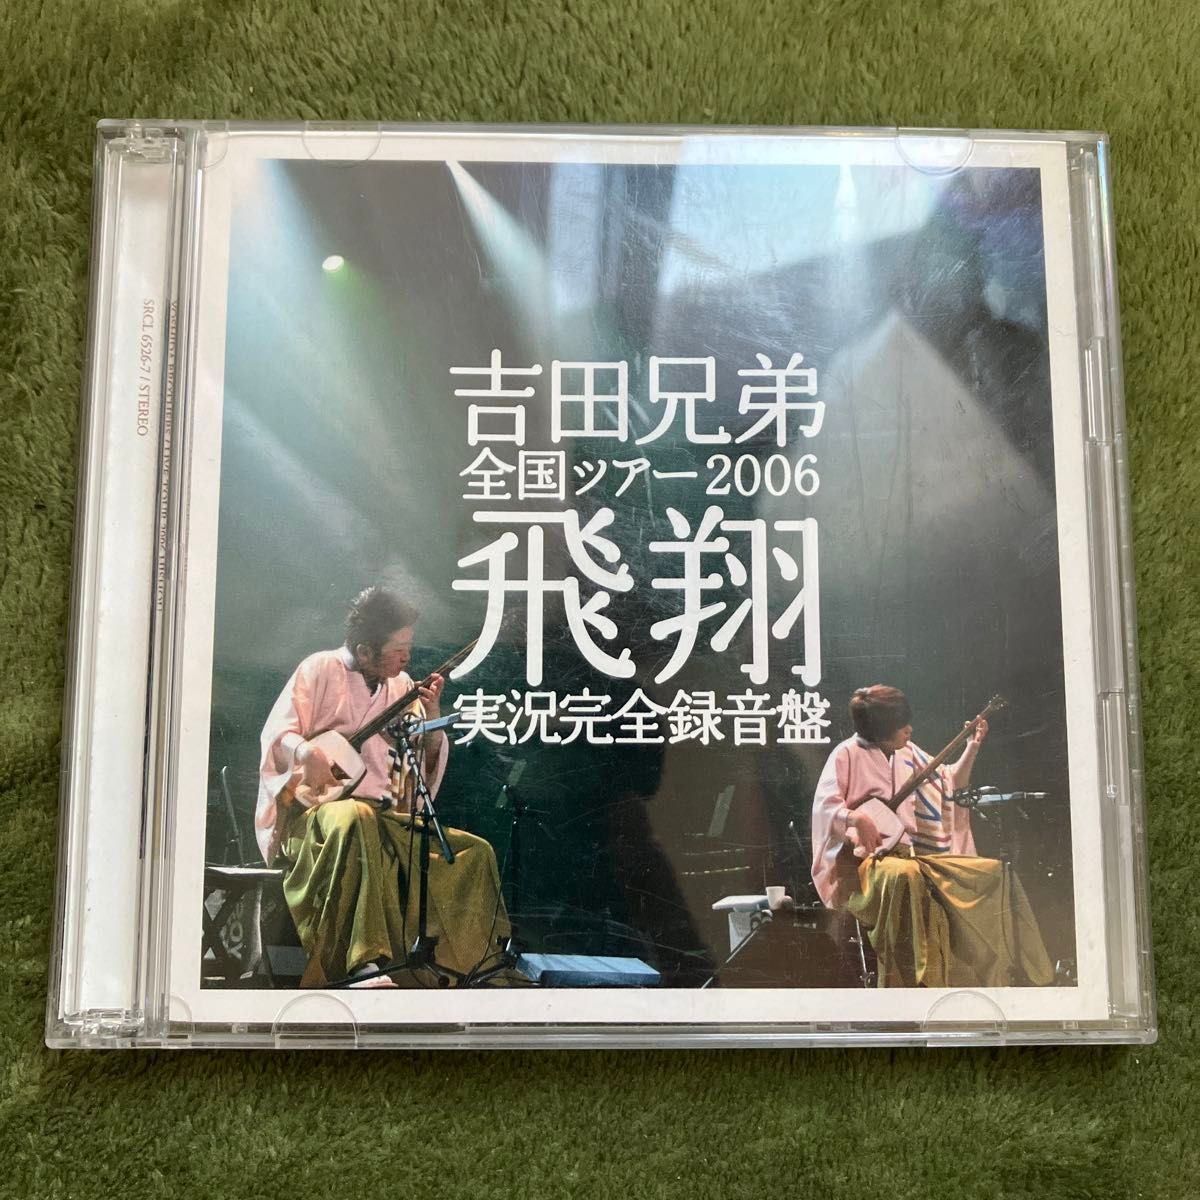 吉田兄弟　全国ツアー2006 「飛翔」 実況完全録音盤 [2枚組]